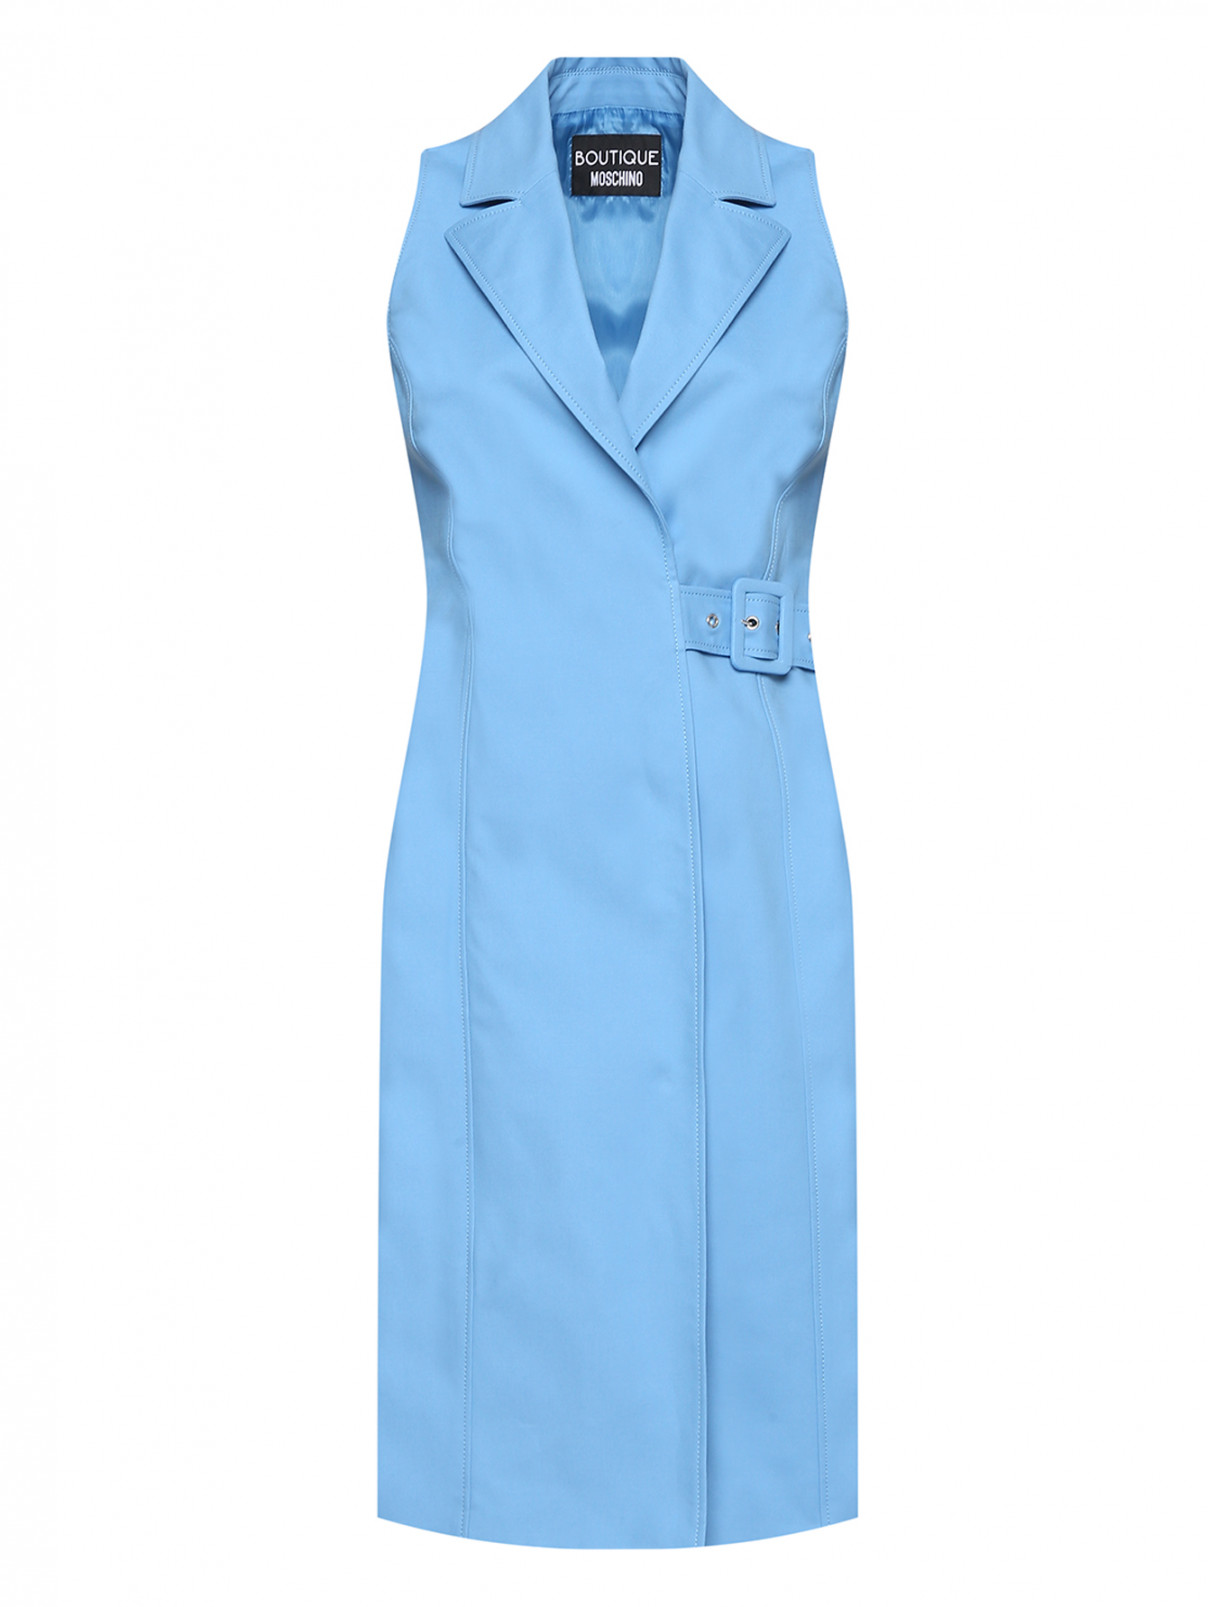 Платье из хлопка без рукавов Moschino Boutique  –  Общий вид  – Цвет:  Синий